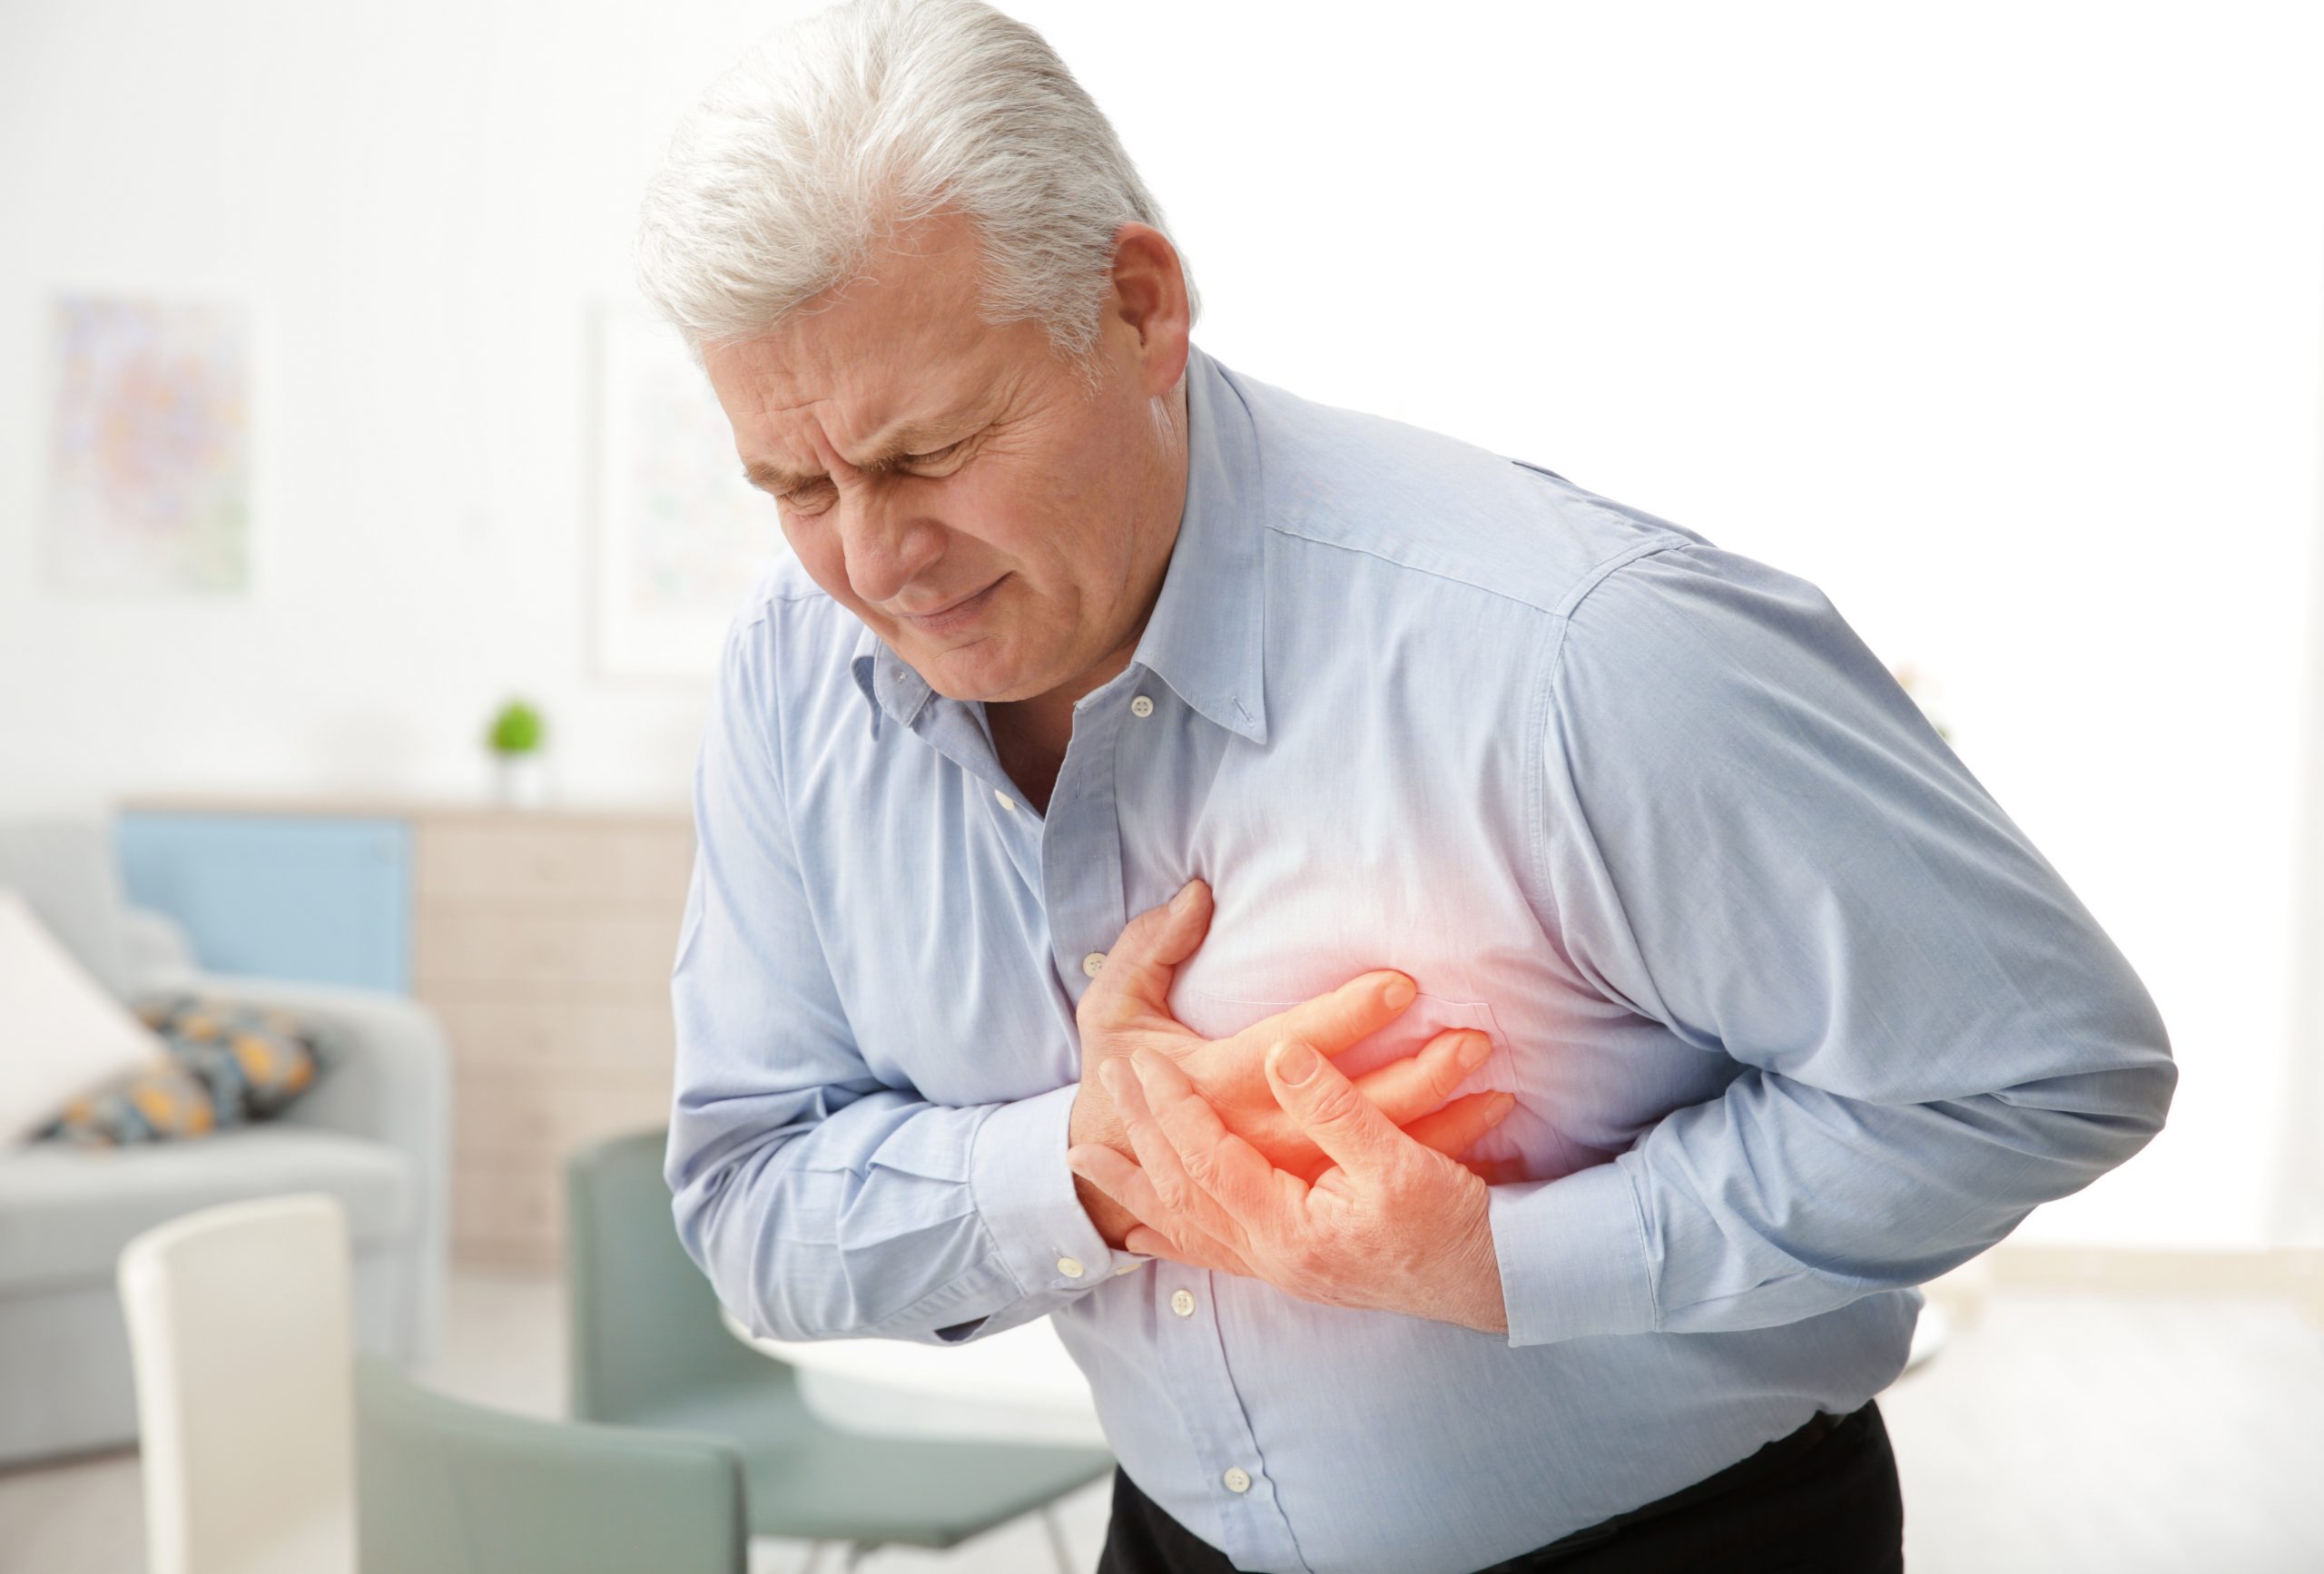 Béo phì là nguyên nhân gây nên các bệnh về tim mạch như suy tim, trụy tim (ảnh minh họa)